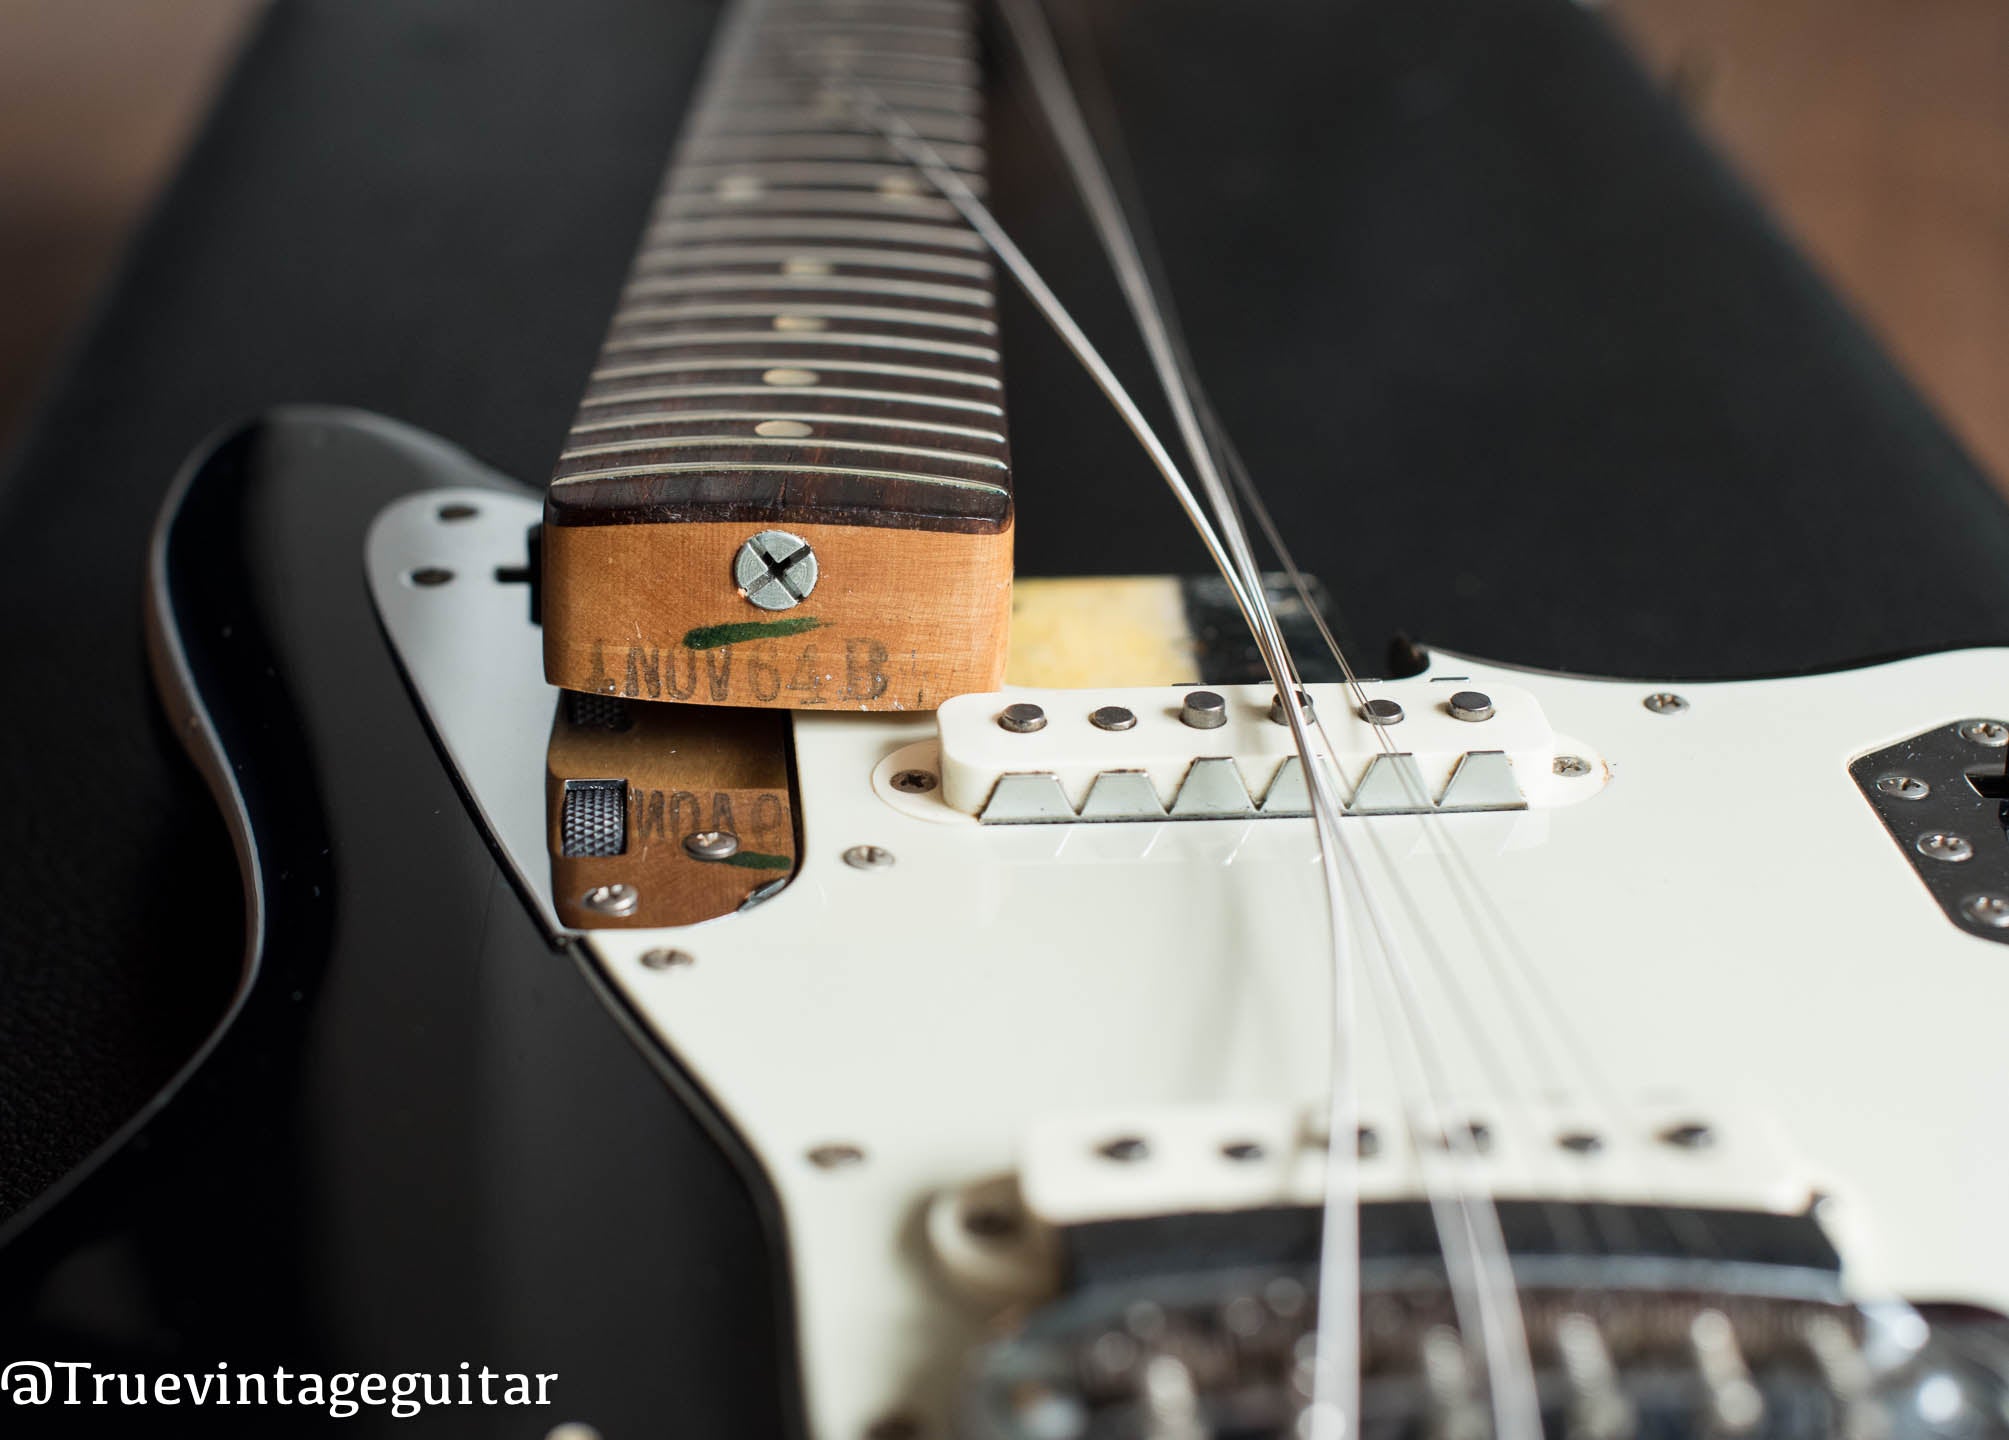 1964 Fender Jaguar Black, neck heel date stamp